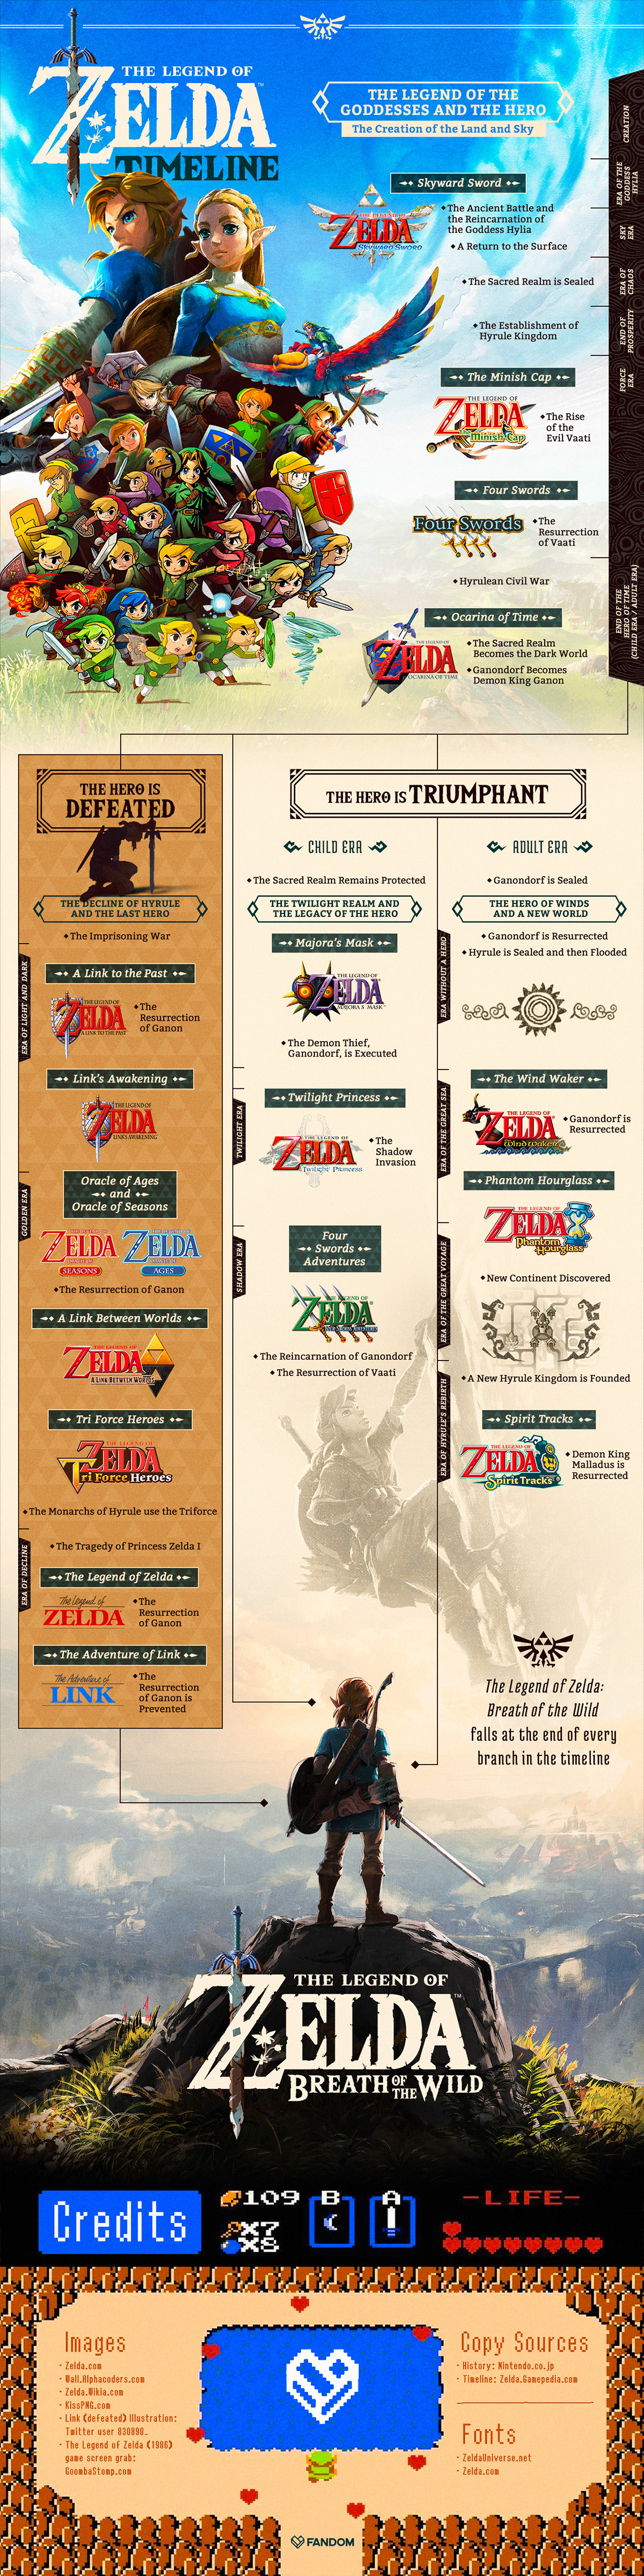 zelda link Legend of Zelda timeline infographic Ocarina Of Time getfandom fandom video game triforce